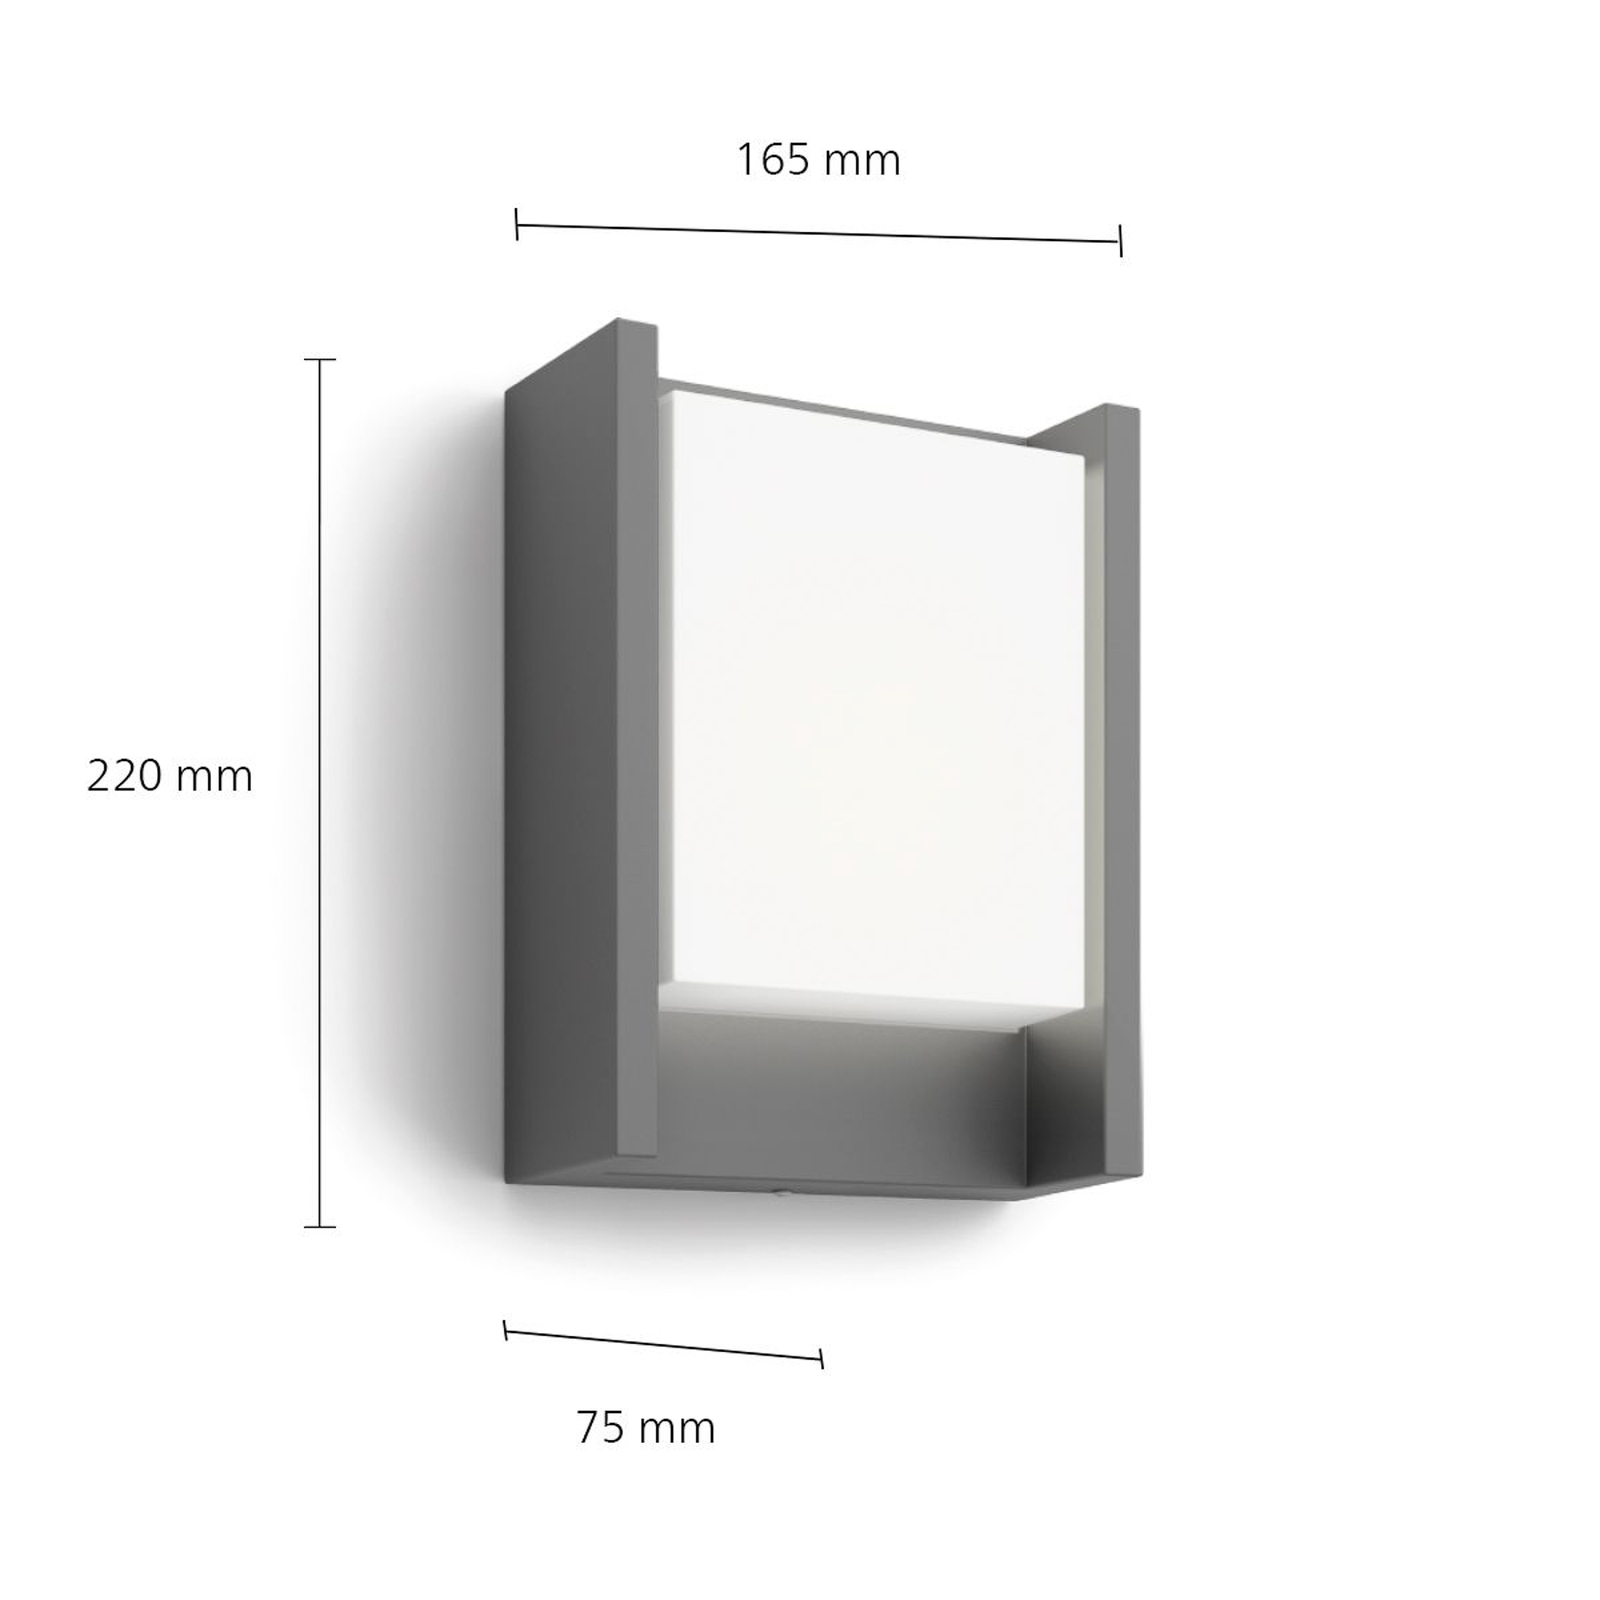 Philips LED pentru exterior Arbour UE, 1 lumină 2.700 K